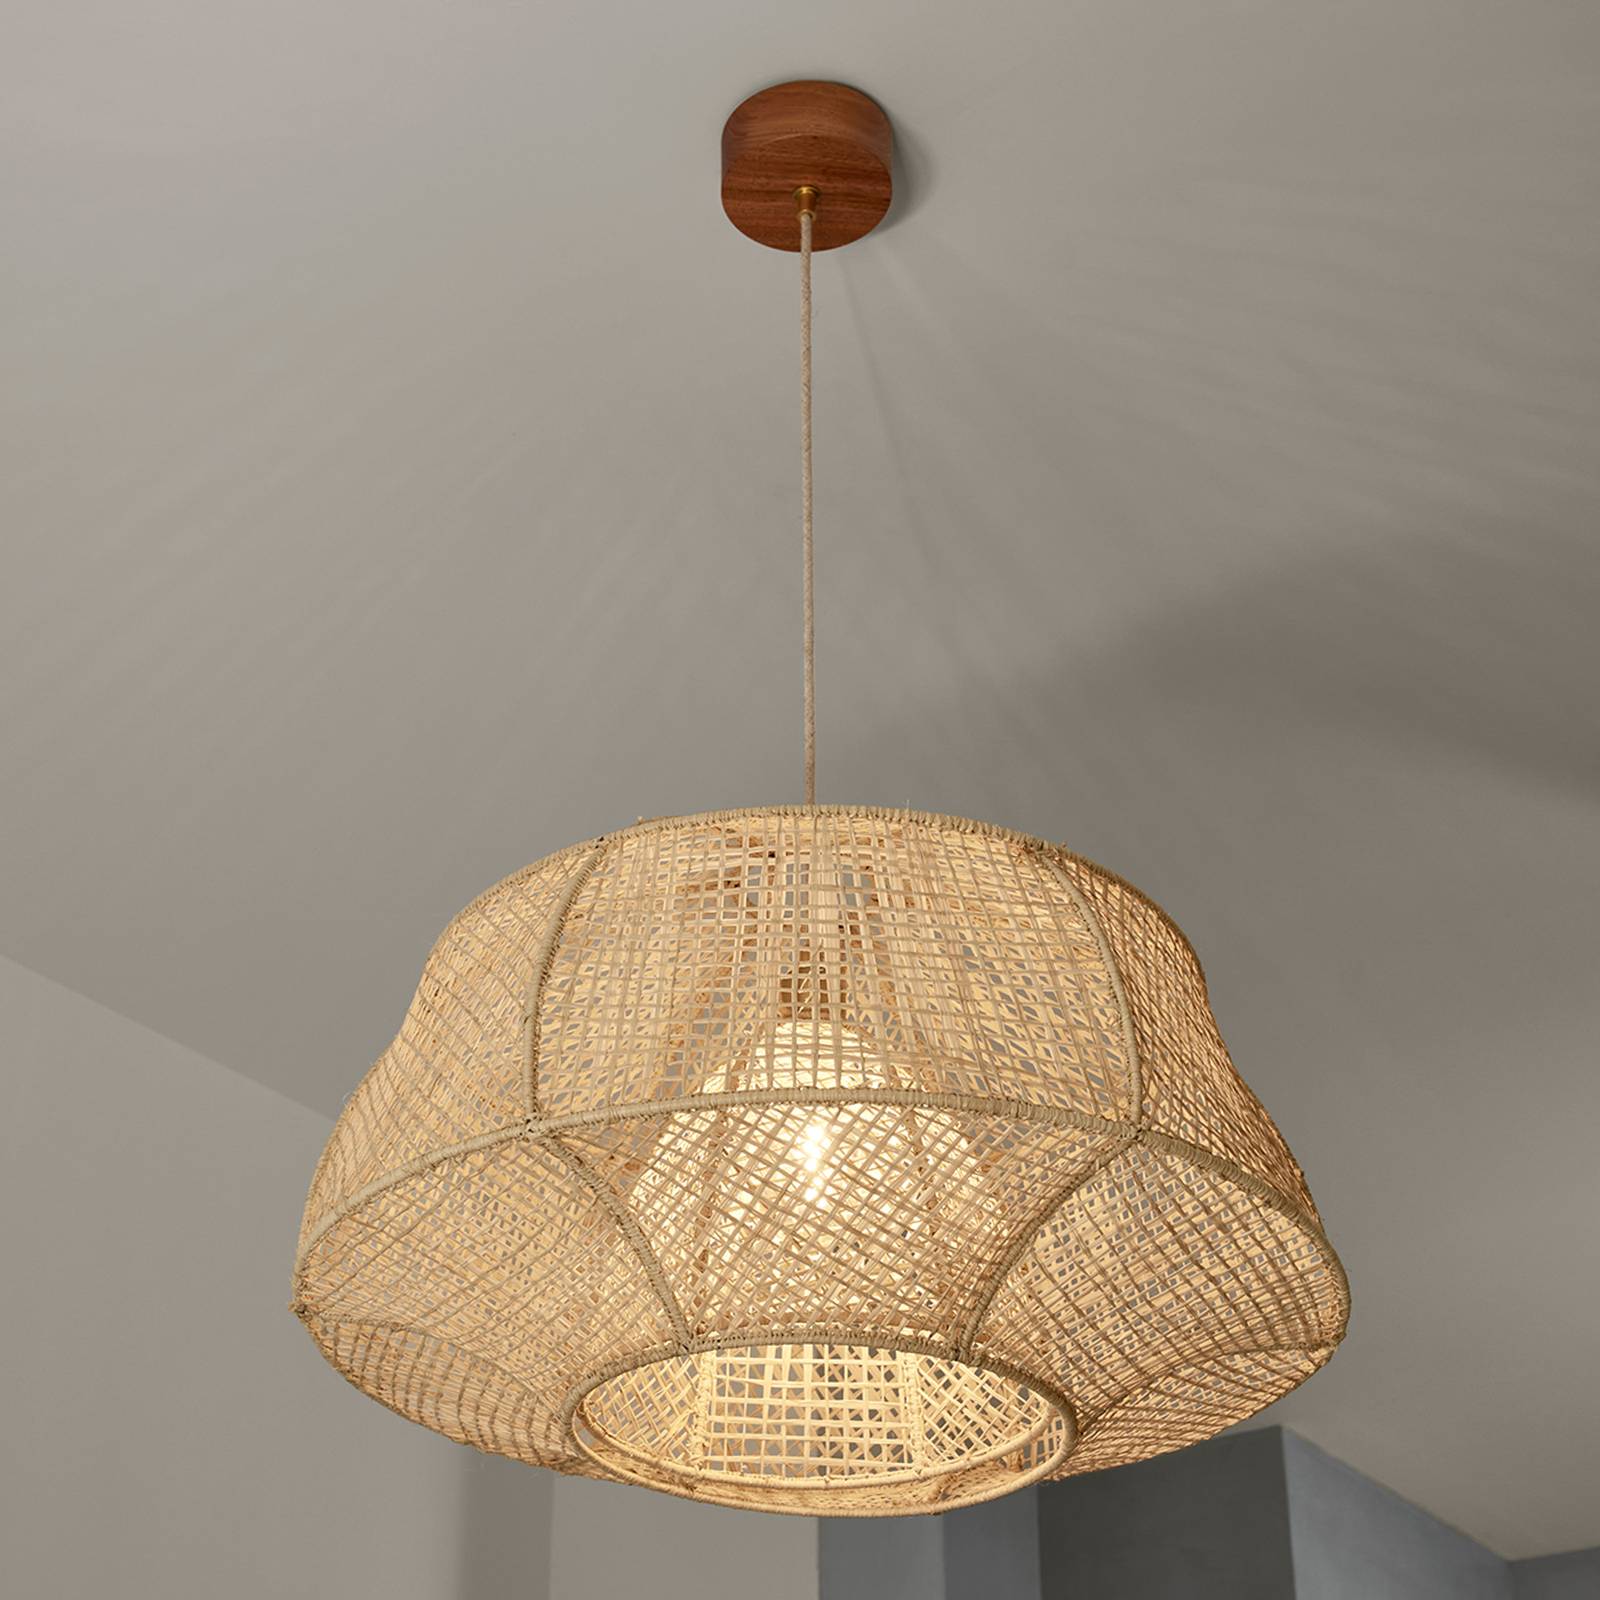 MARKET SET MARKET SET Závěsná lampa Odyssée, palmové vlákno, Ø 78 cm